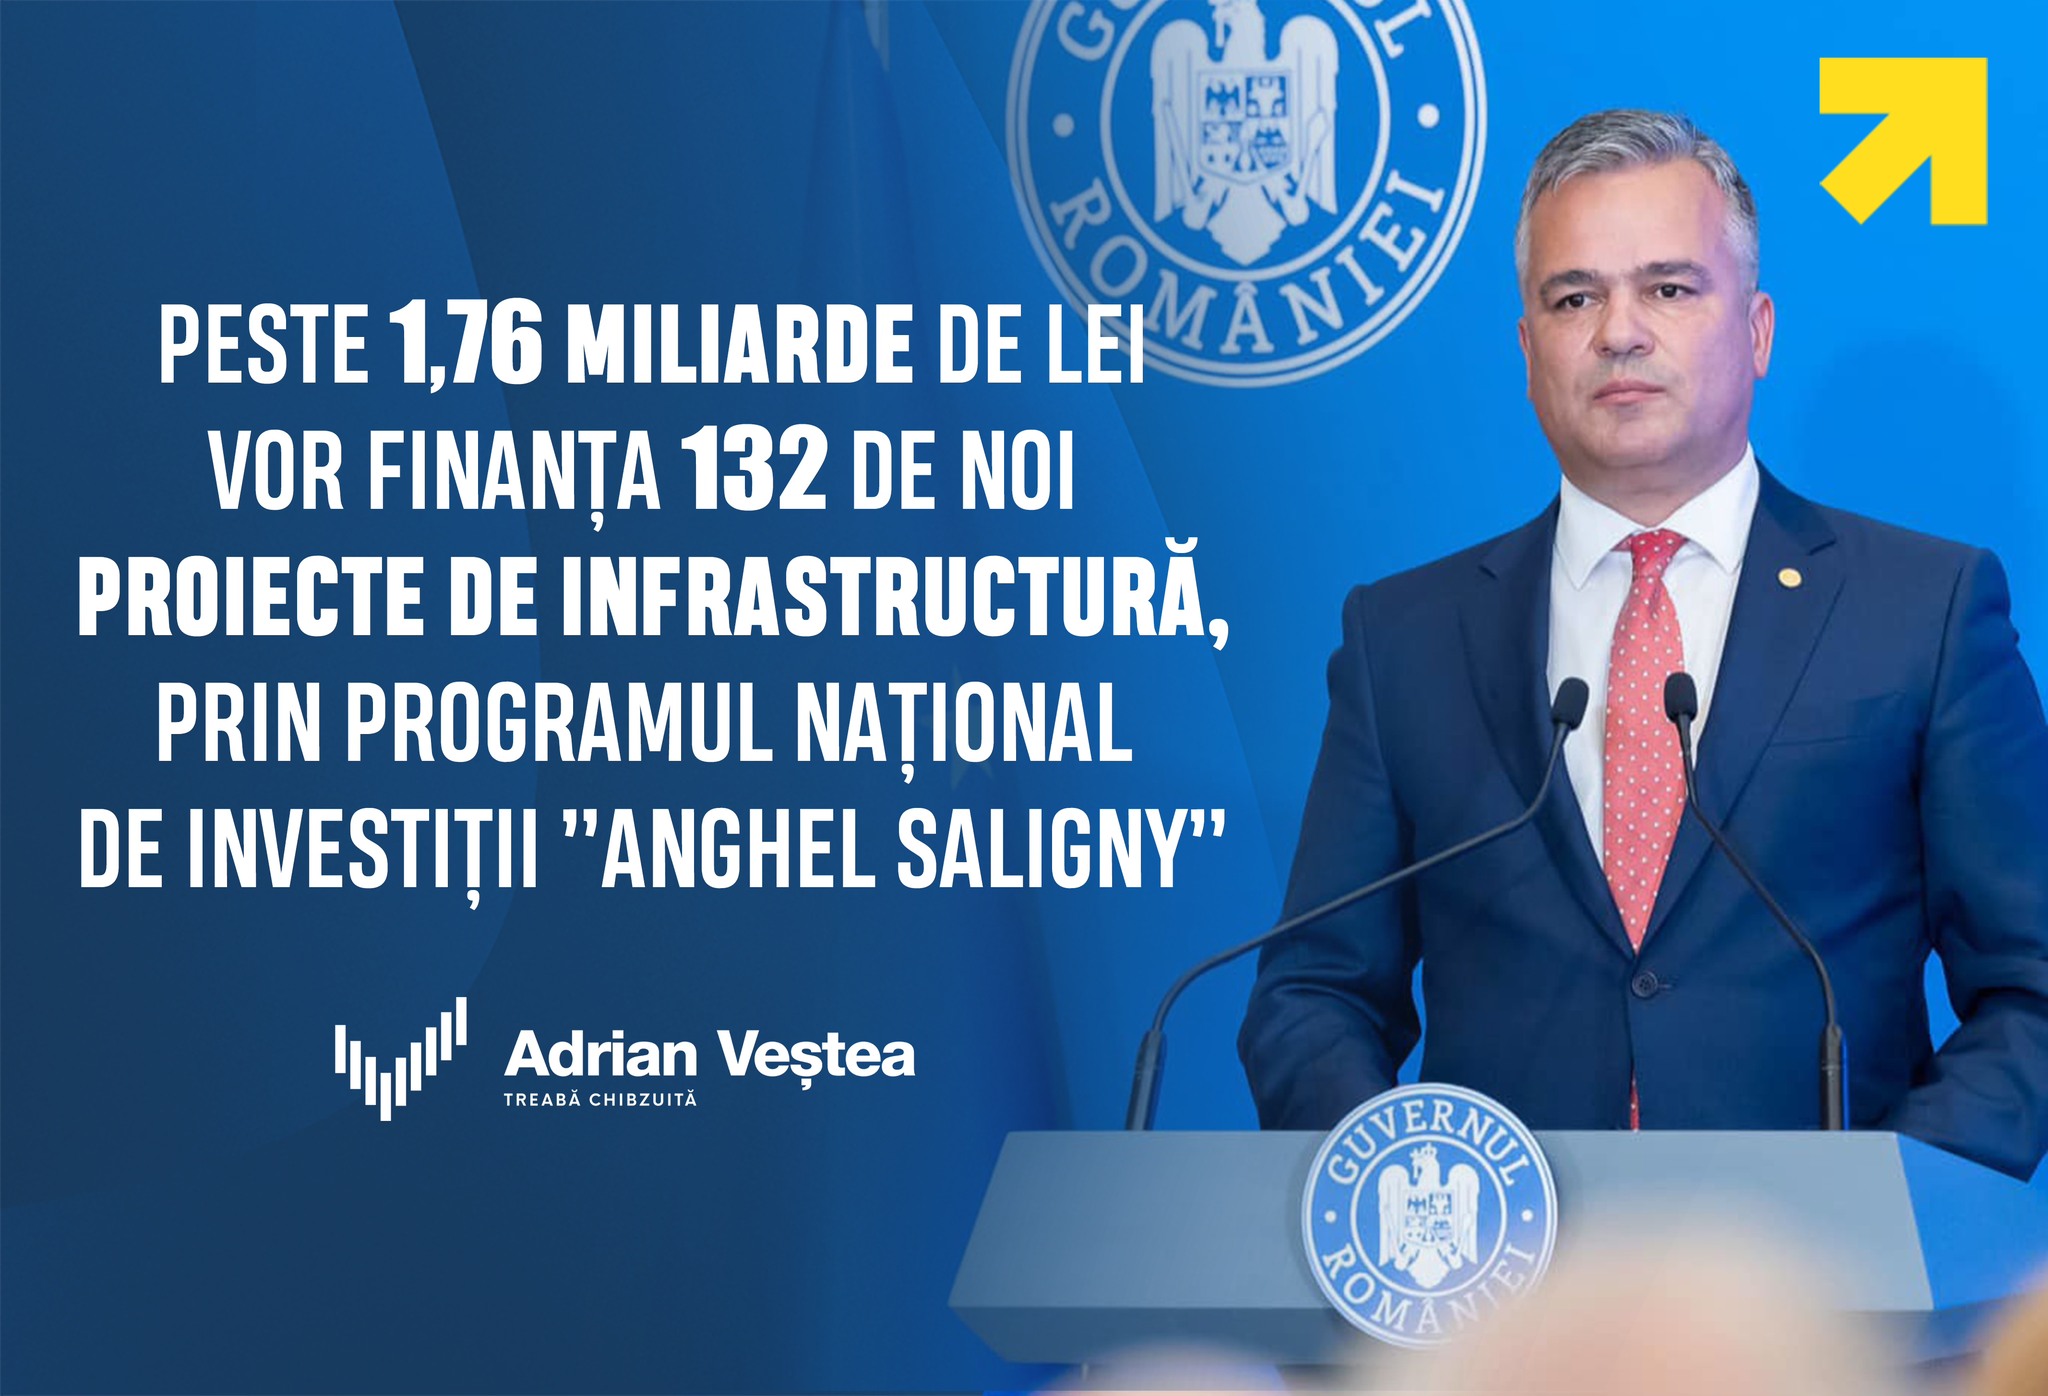 Ministrul Adrian Veștea Ministerul Dezvoltării a finanțat 132 de proiecte noi dezvoltarea infrastructurii rutiere și tehnico edilitare PNI Anghel Saligny peste 1,76 miliarde lei